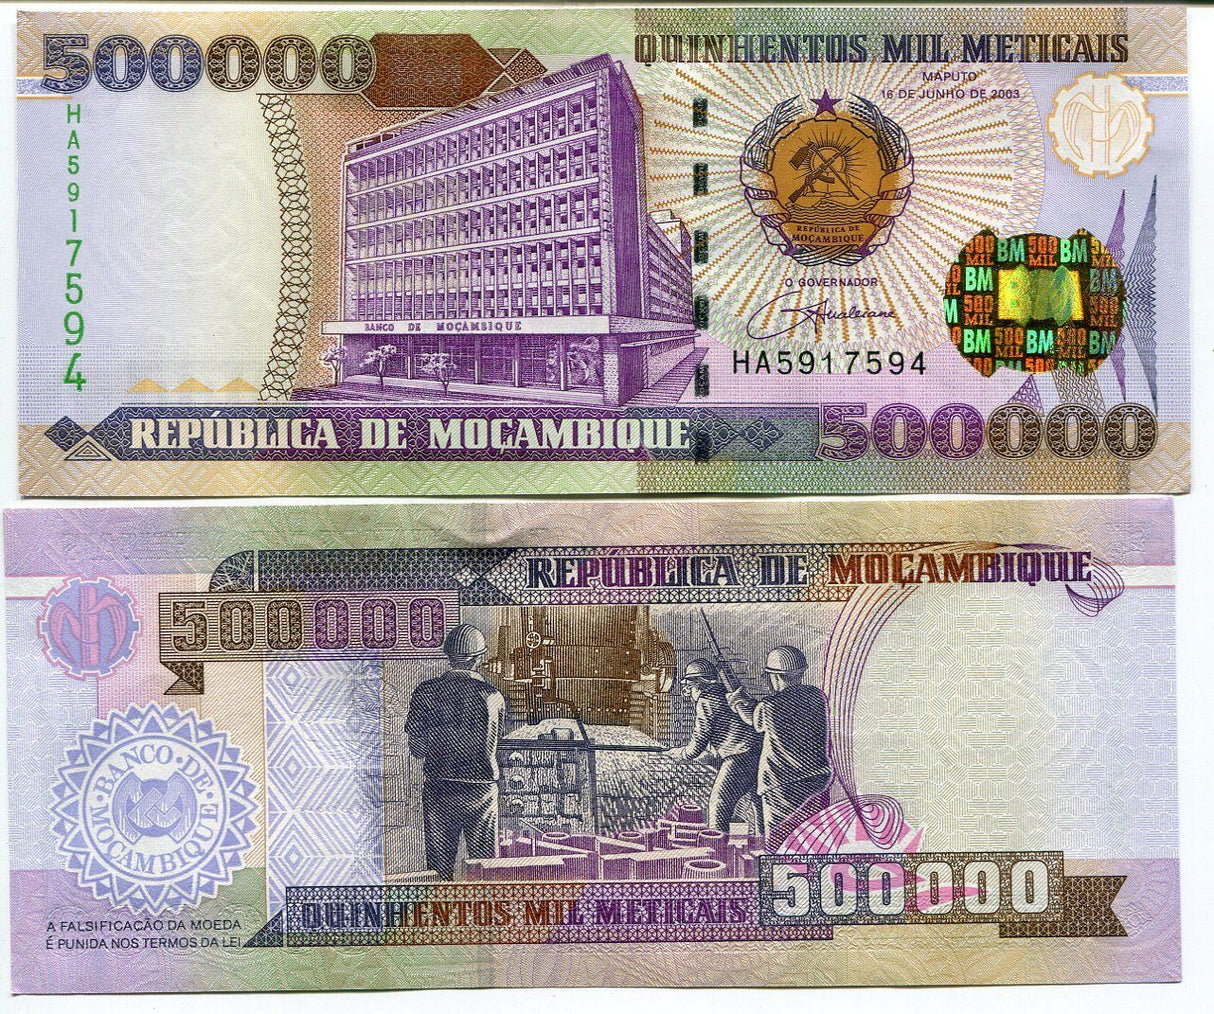 Mozambique 500000 Meticais 2003 P 142 UNC